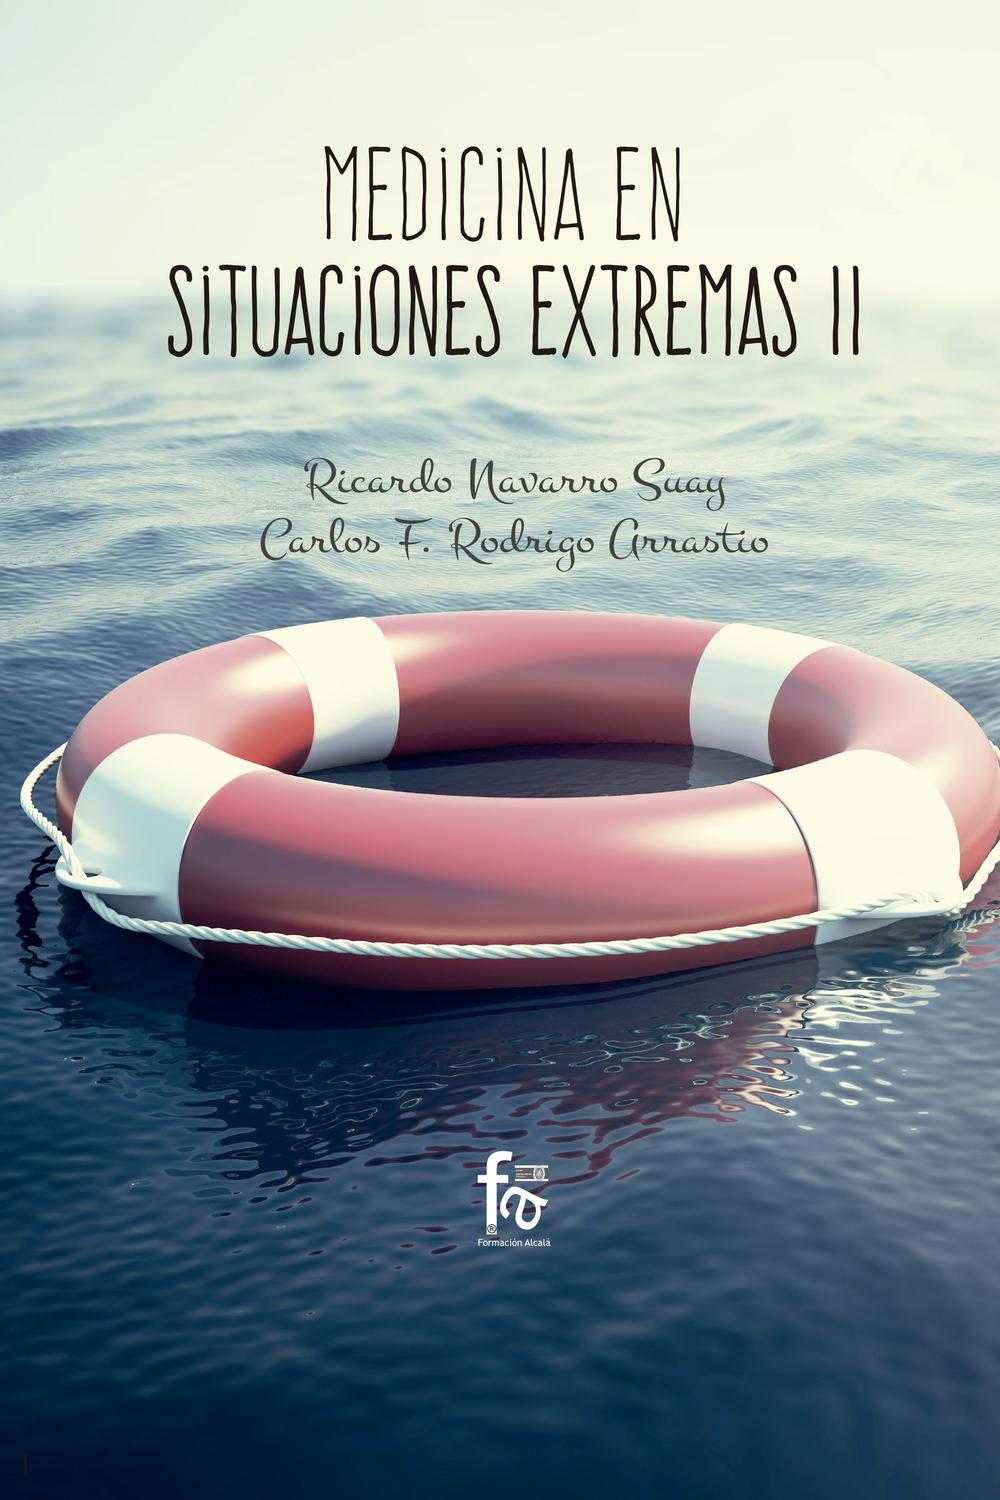 Medicina en situaciones extremas II - Ricardo Navarro Suay, Carlos F. Rodrigo Arrastio